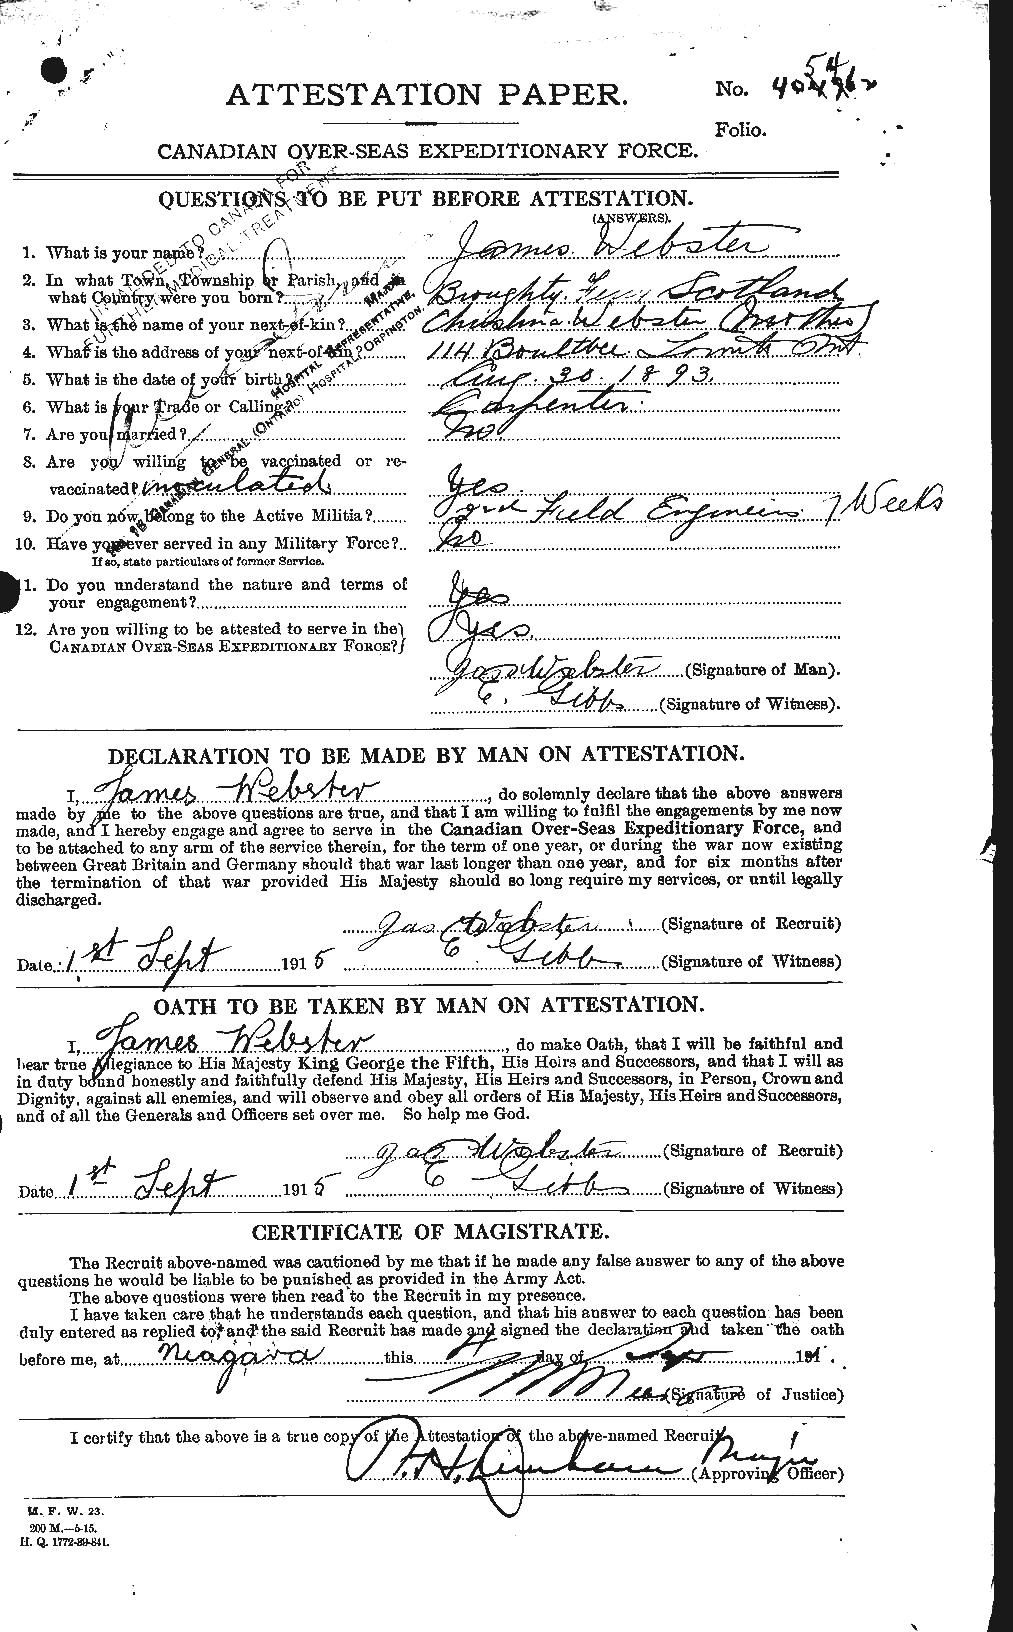 Dossiers du Personnel de la Première Guerre mondiale - CEC 670449a